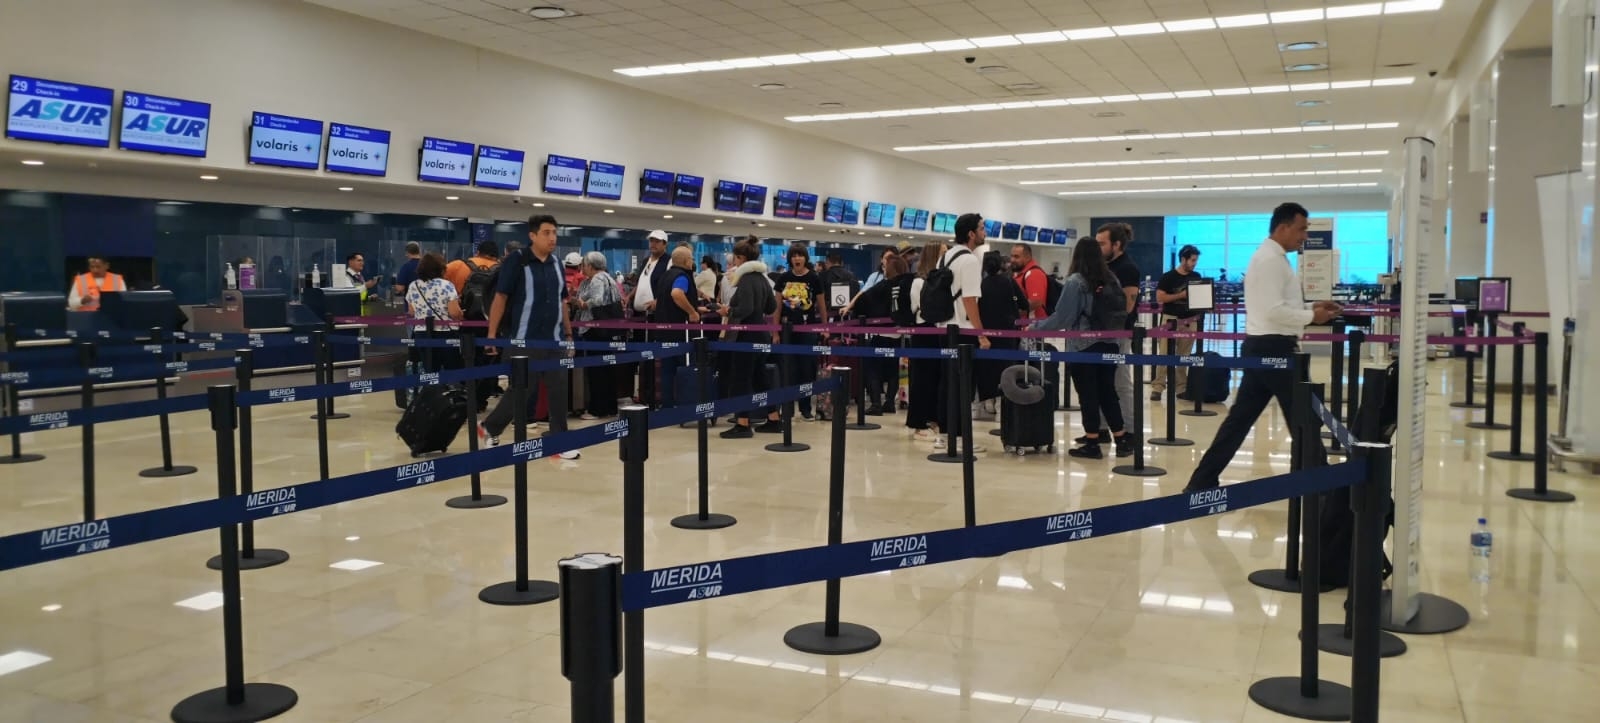 Se registra buena afluencia en vuelos en el aeropuerto de Mérida este viernes